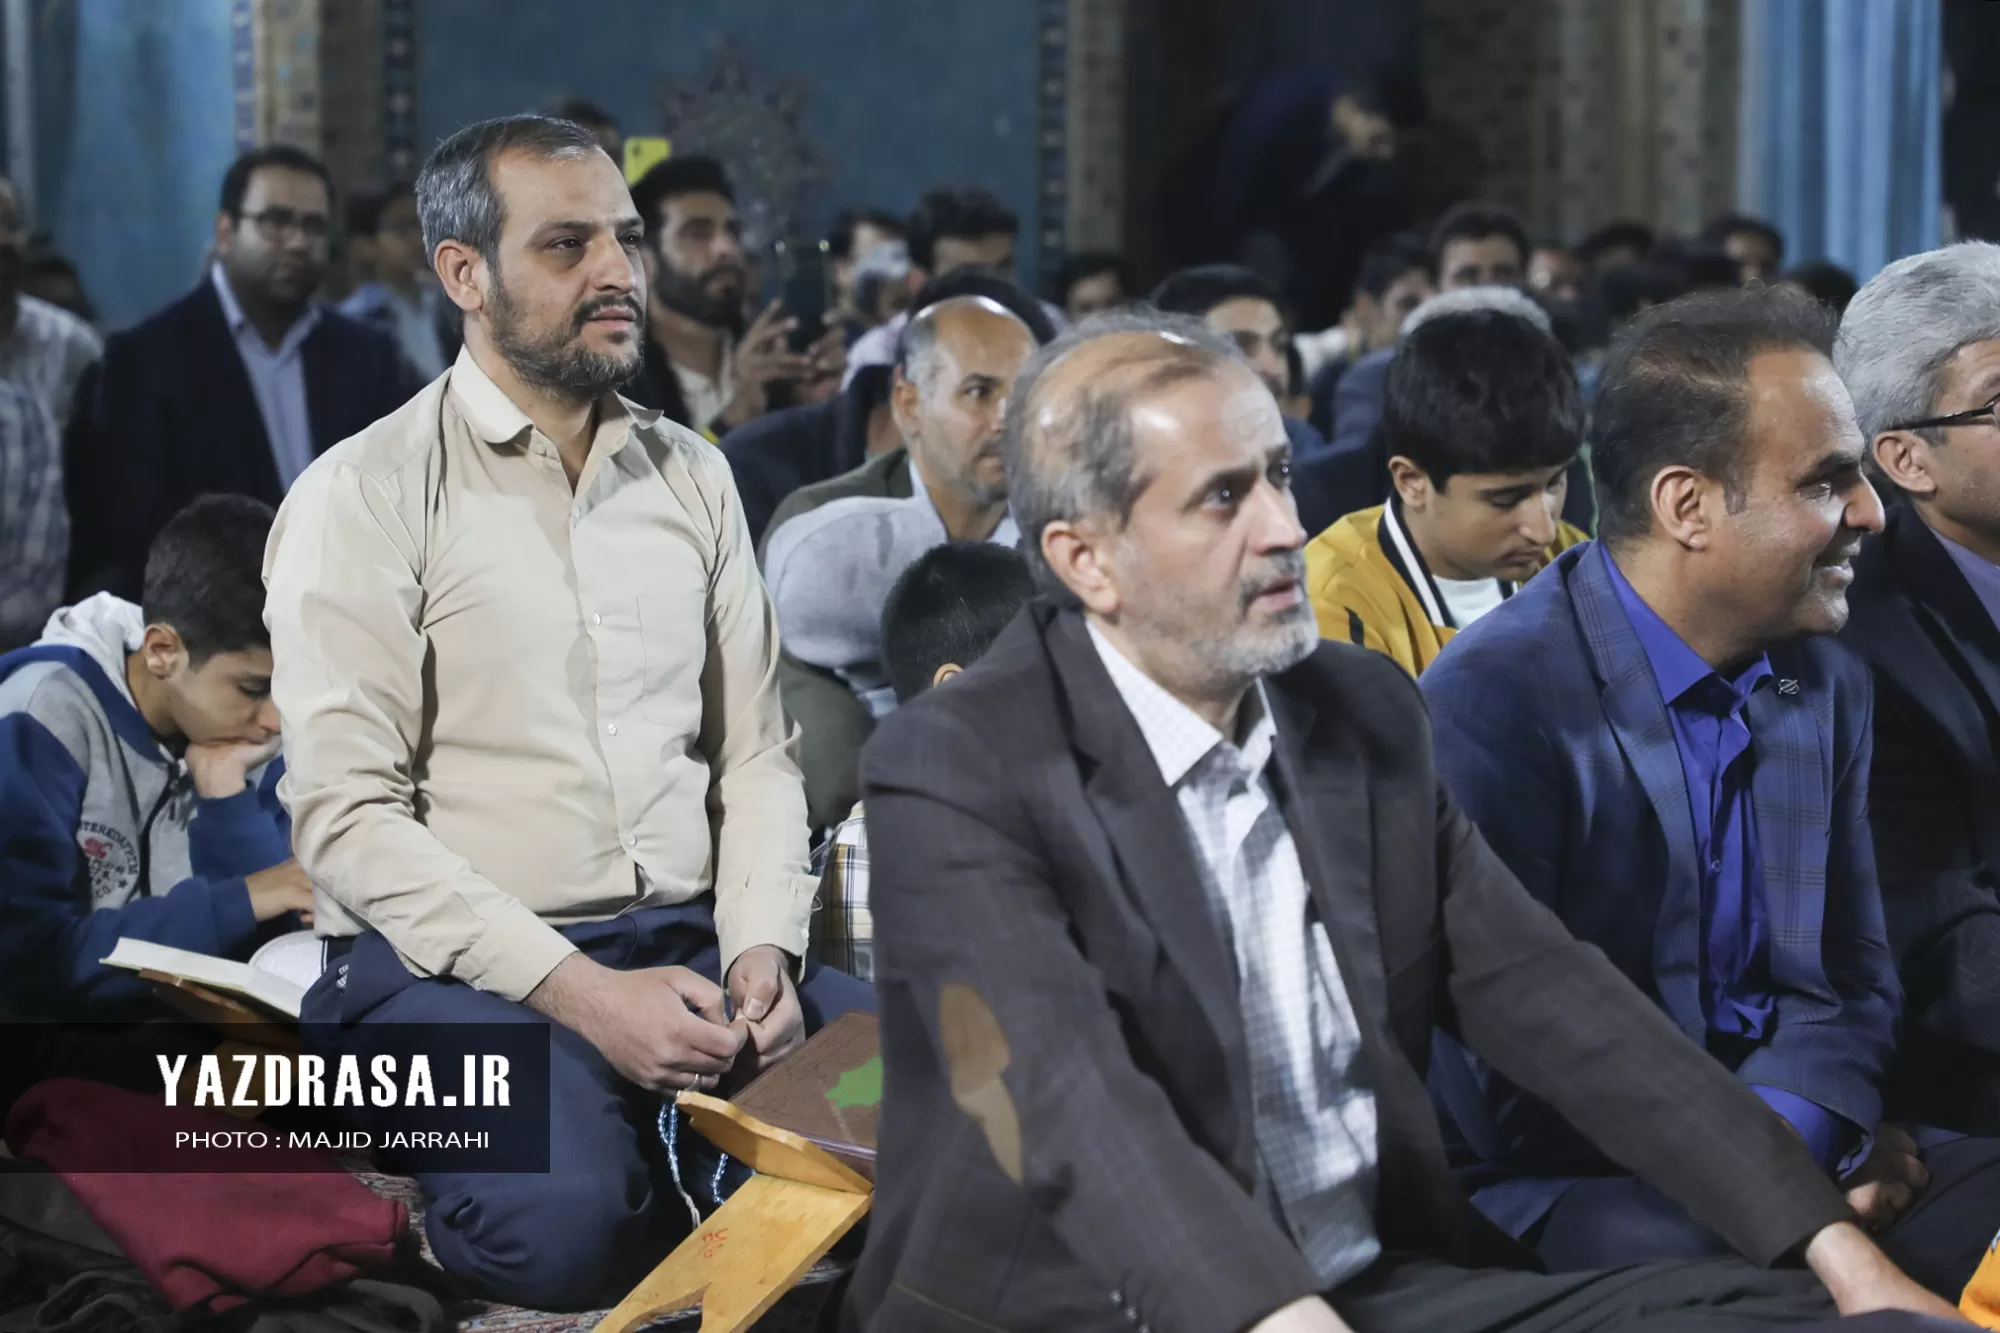 محفل انس با قرآن در مسجد جامع یزد